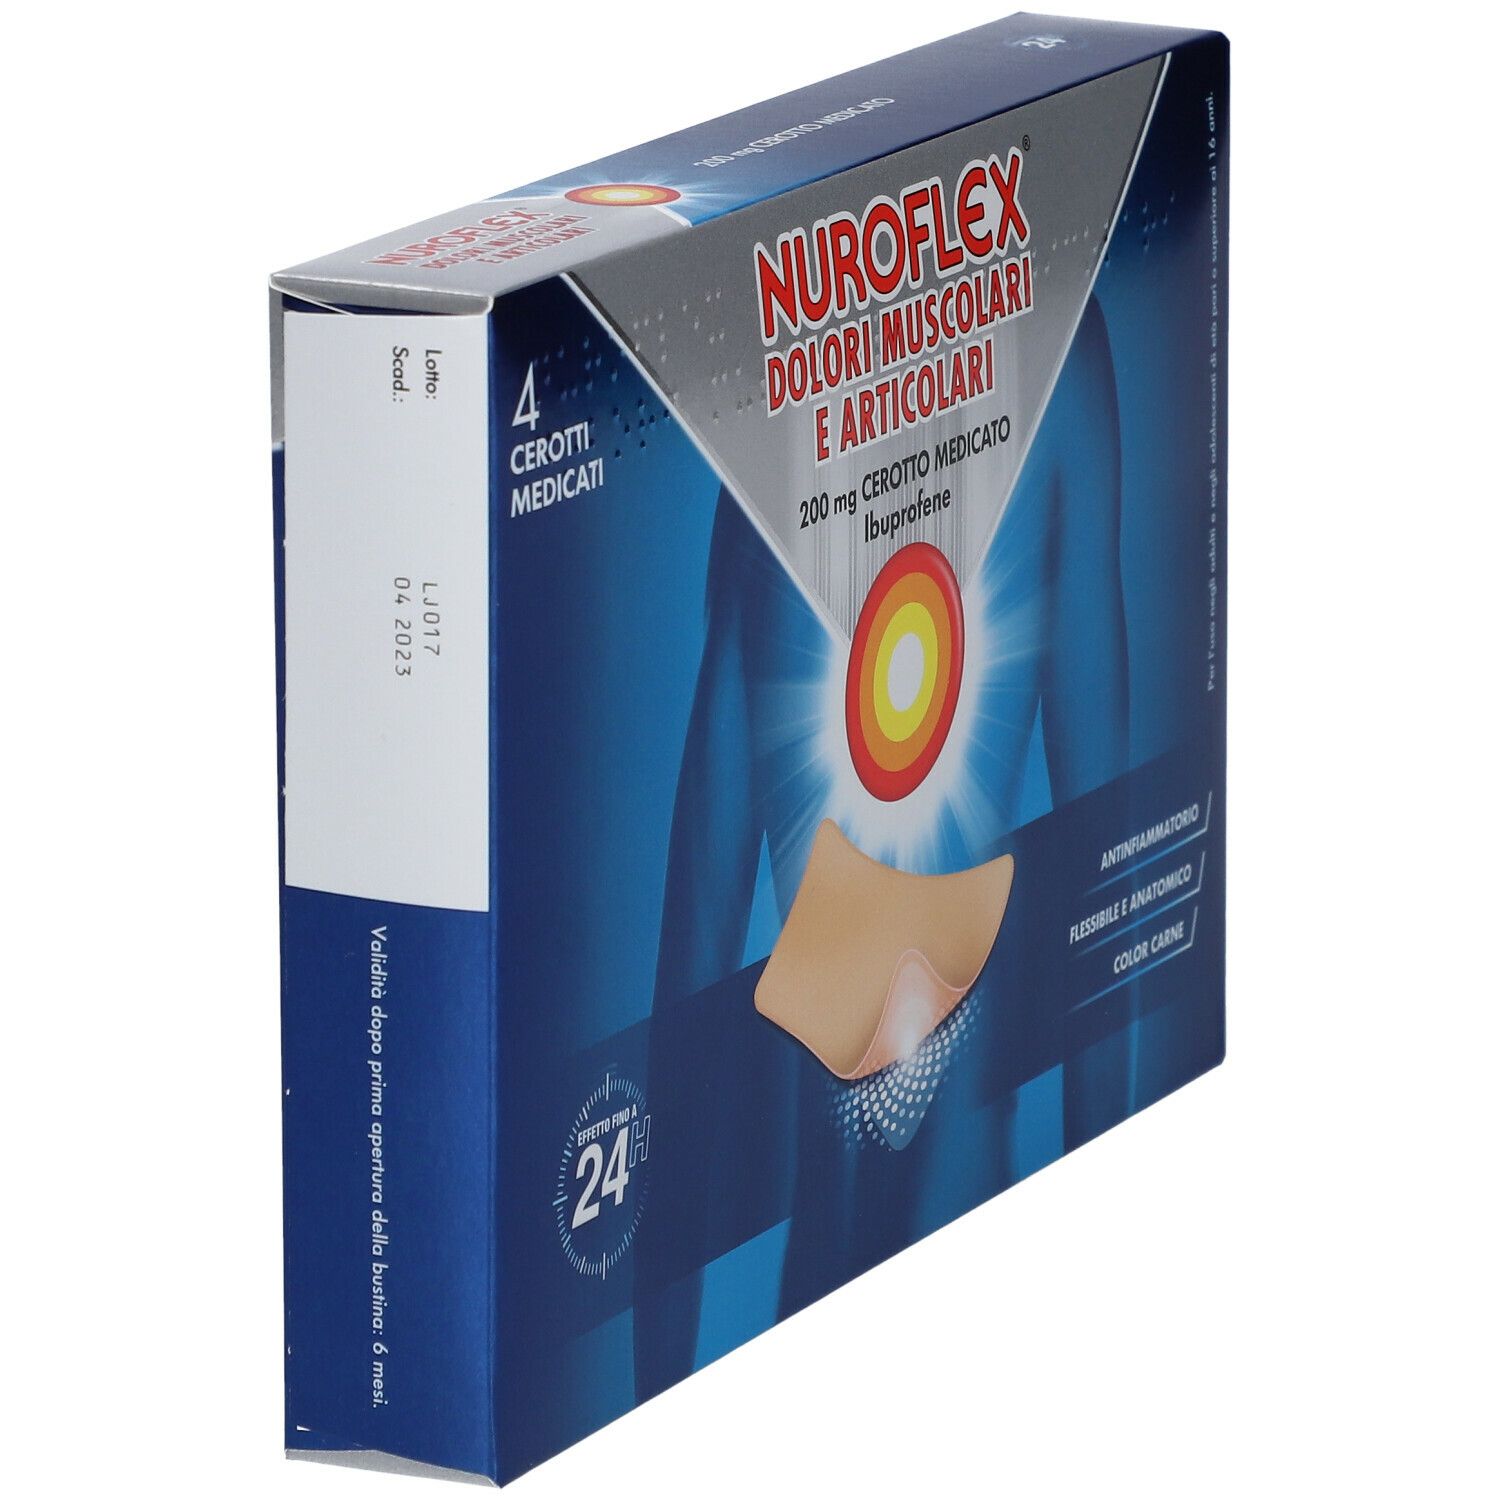 NUROFLEX Dolori Muscolari e Articolari, 200 mg Cerotto Medicato